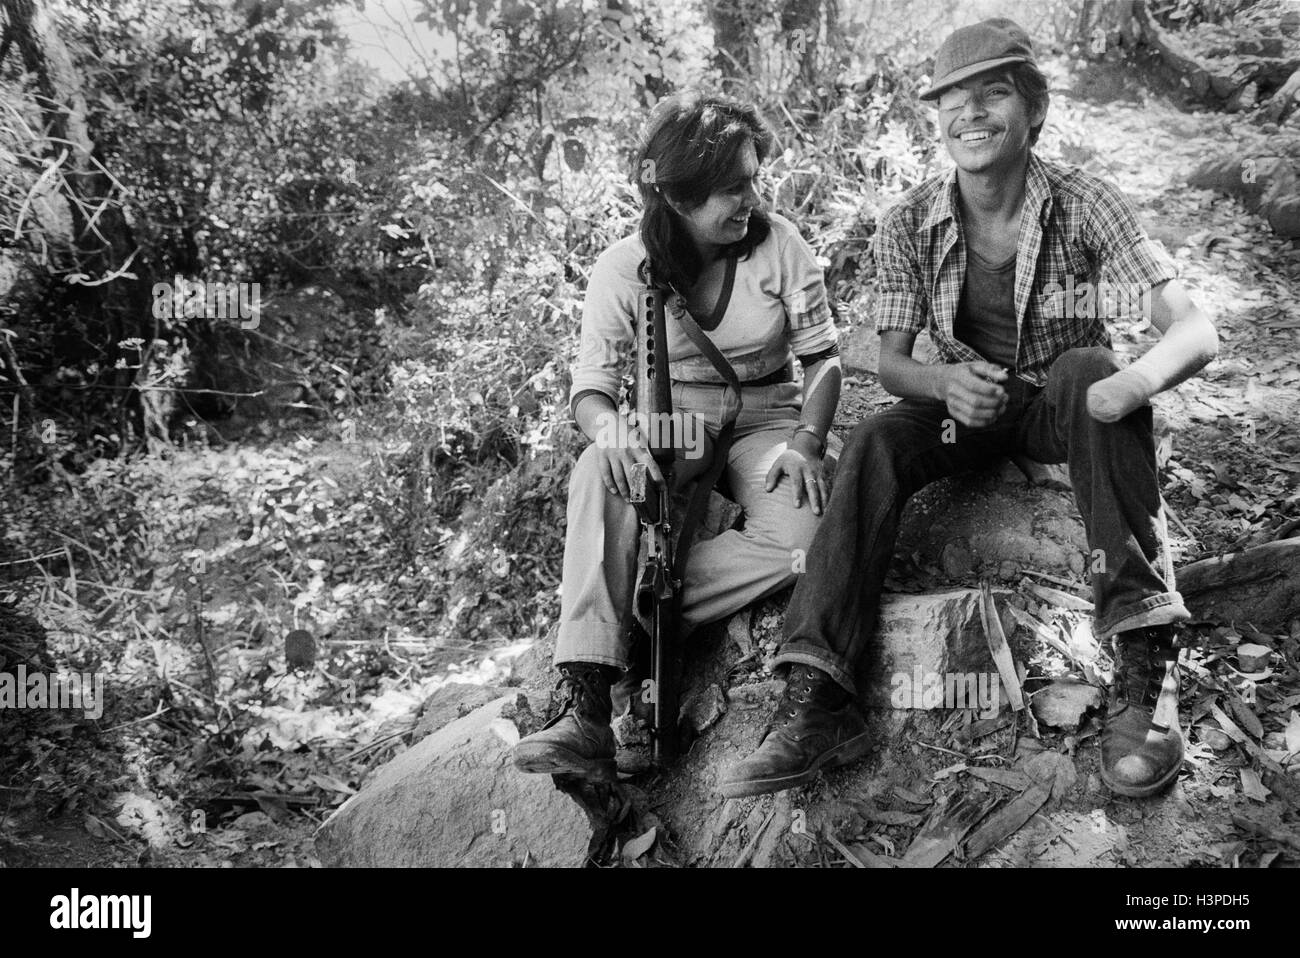 CHALATENANGO, EL SALVADOR, FEB 1984: - im Rahmen der FPL-Guerilla Zonen des Steuerelements. Ein verwundeter FPL-Kämpfer mit einem Freund. Stockfoto